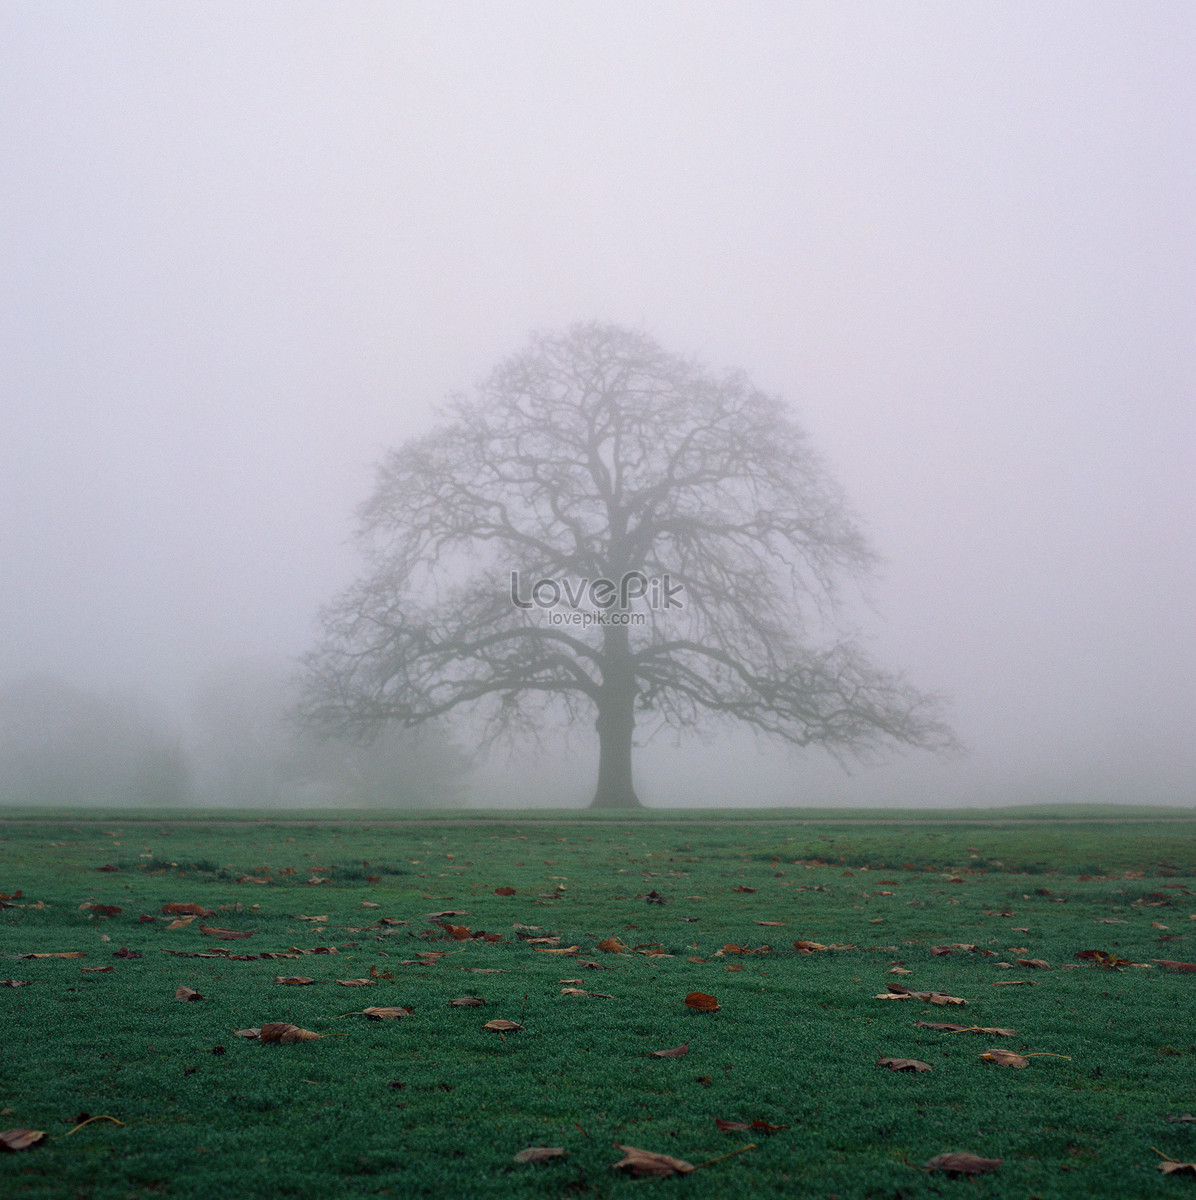 霧中的樹圖片素材-JPG圖片尺寸5682 × 5700px-高清圖案501474619-zh.lovepik.com